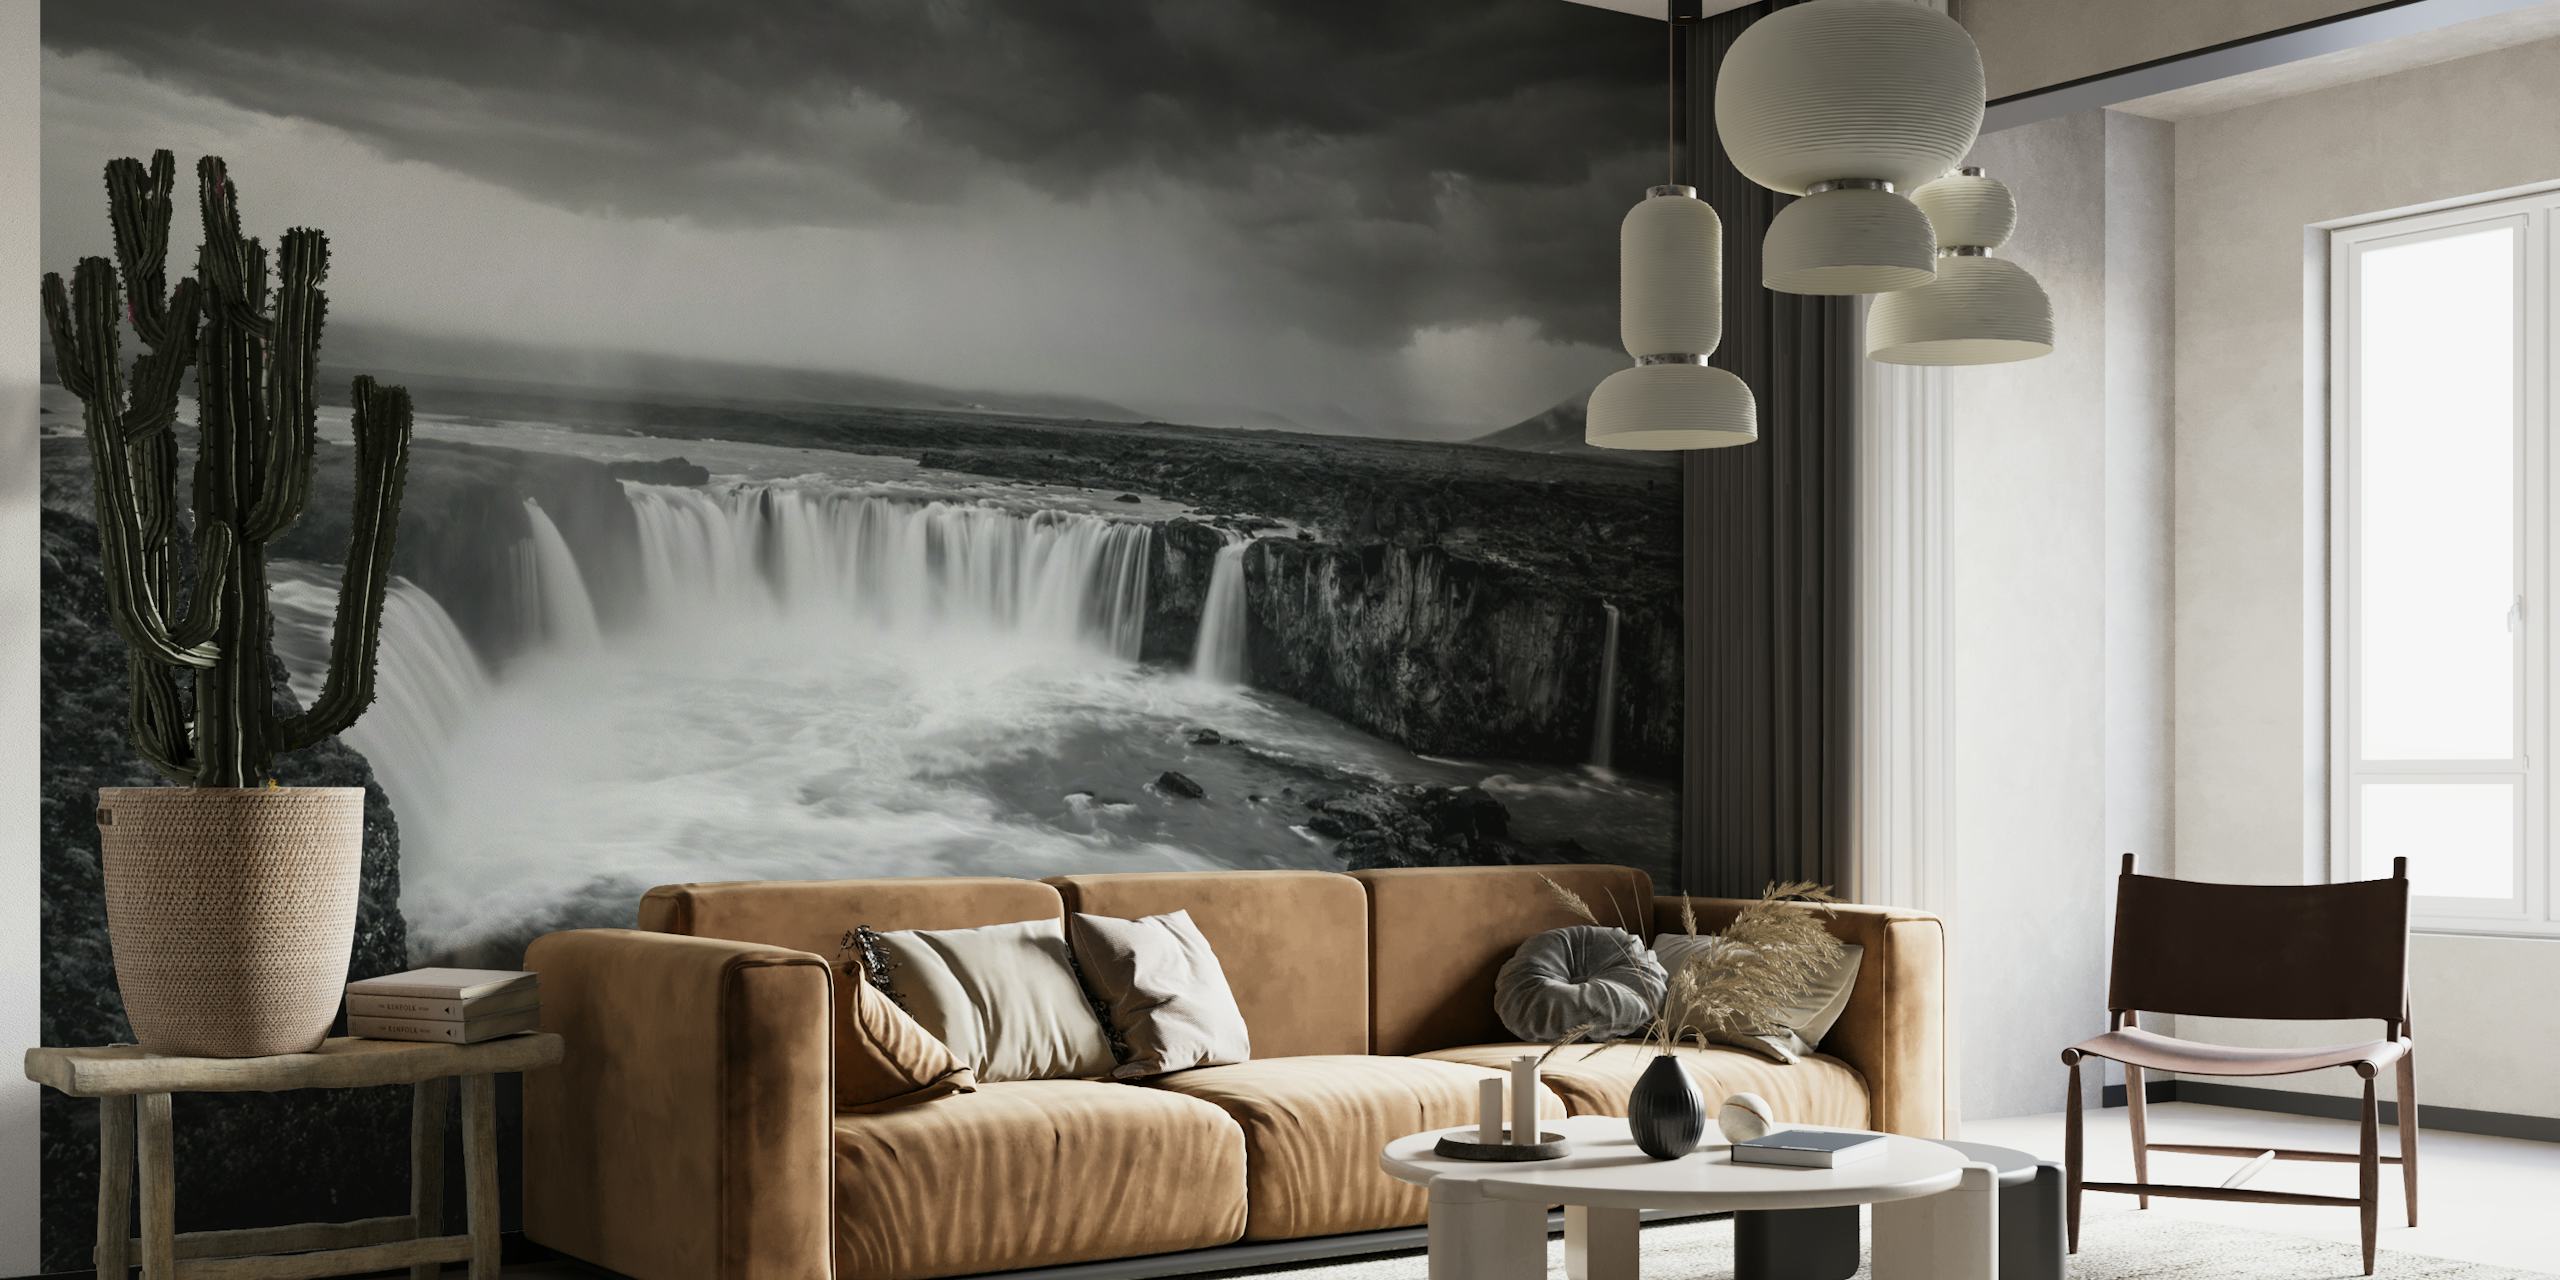 Zwart-wit fotobehang van een krachtige waterval onder een stormachtige hemel, wat een mythische en eeuwenoude sfeer oproept